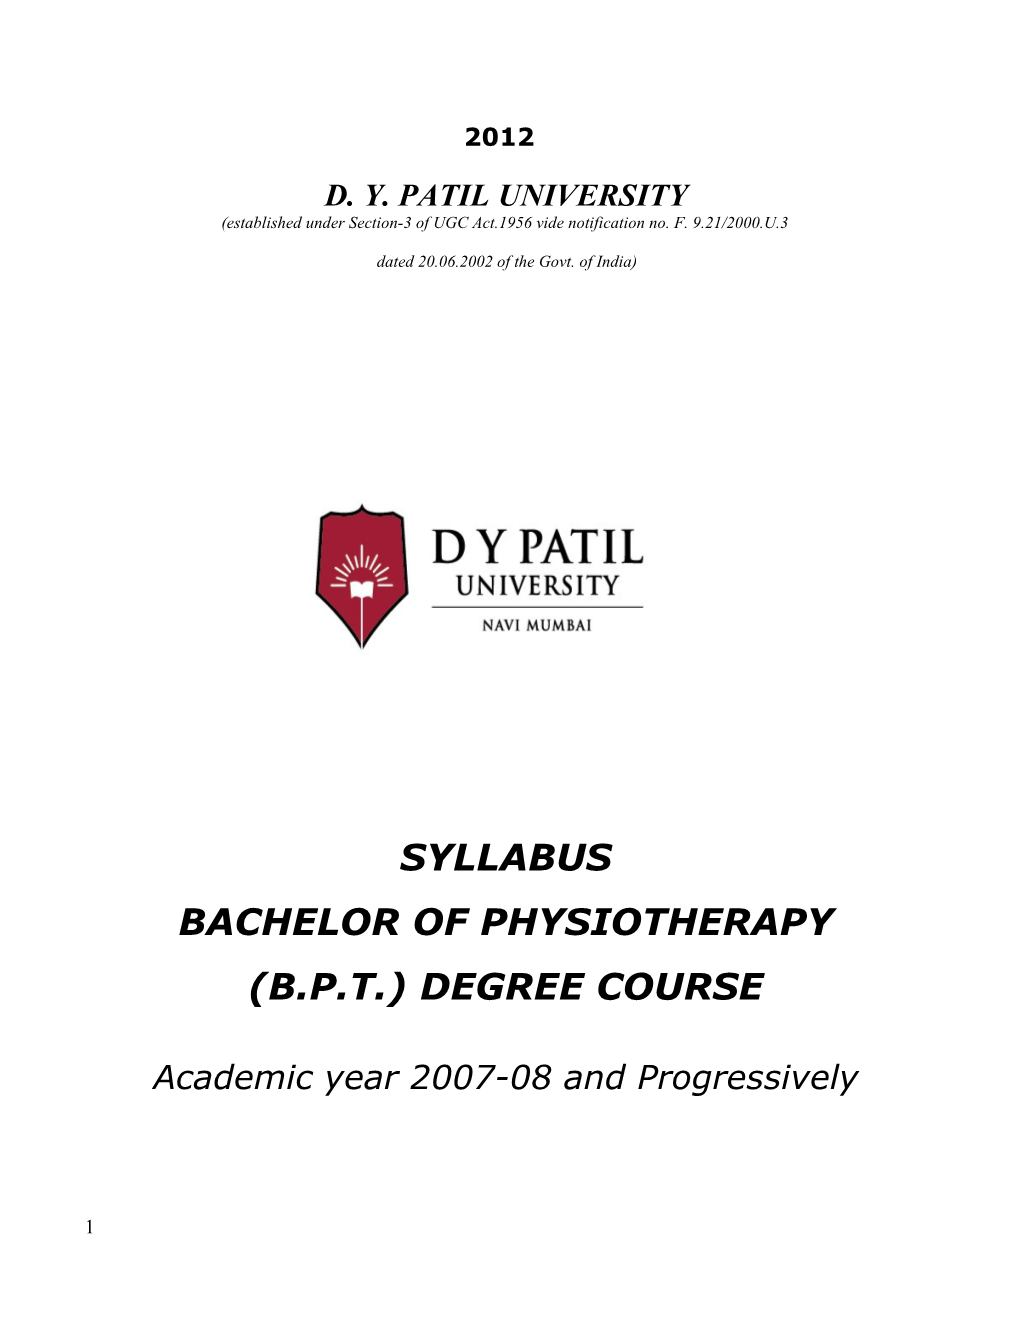 D. Y. Patil University